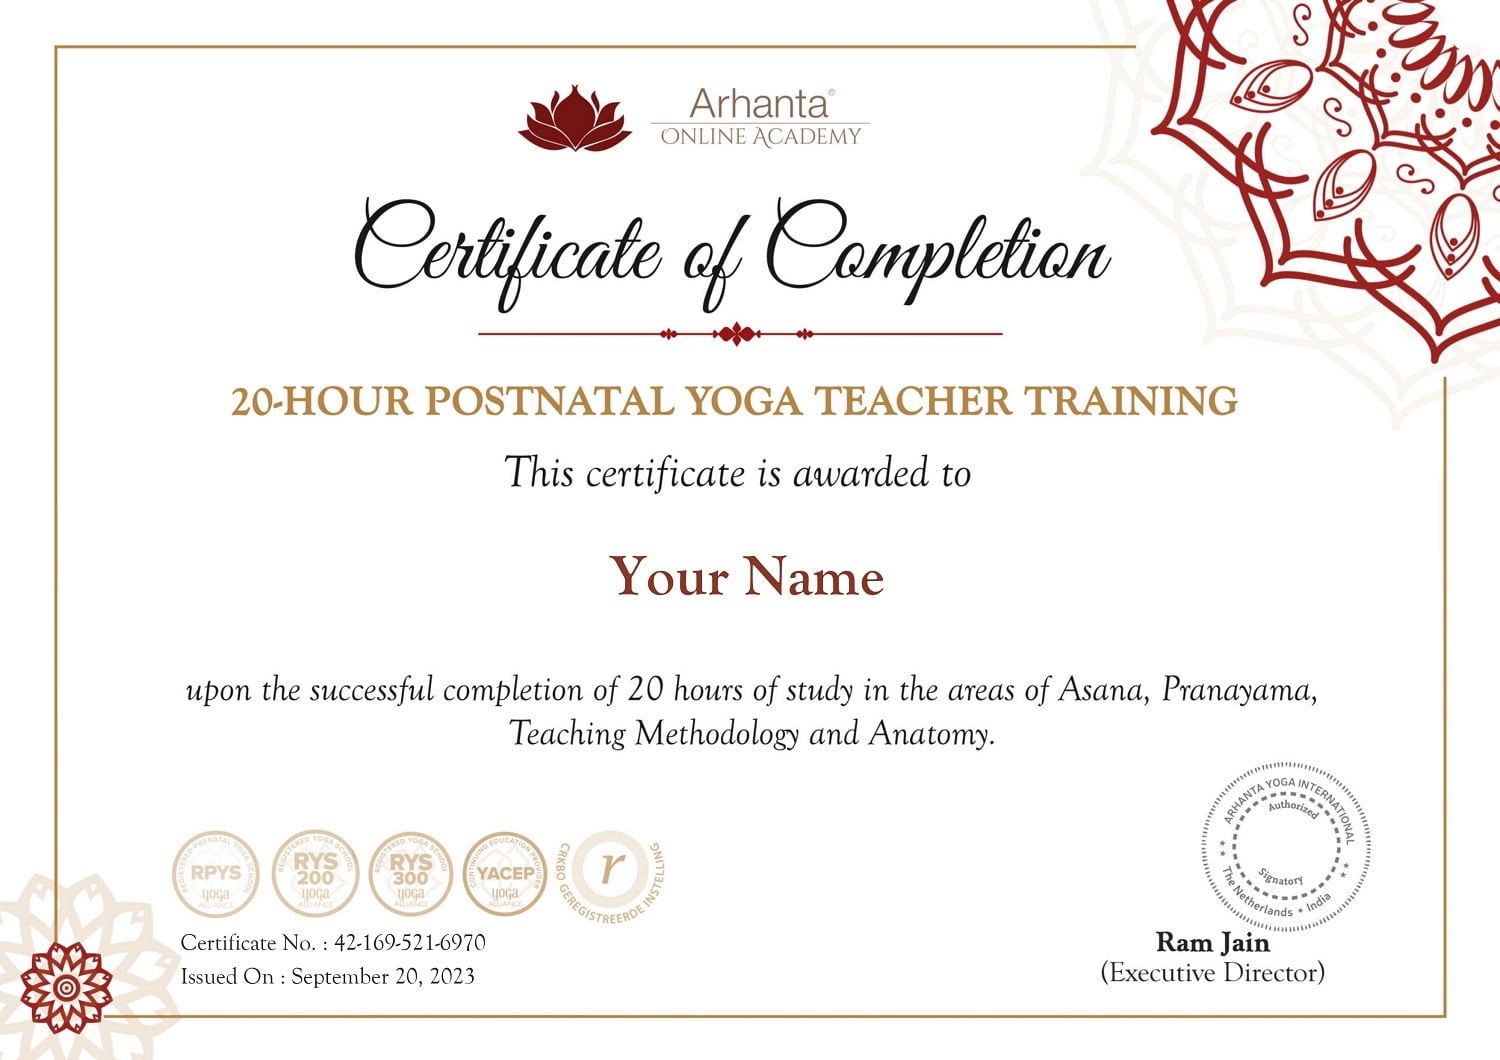 Certificato-di-formazione-per-insegnanti-di-yoga-postnatale-di-20-ore-online